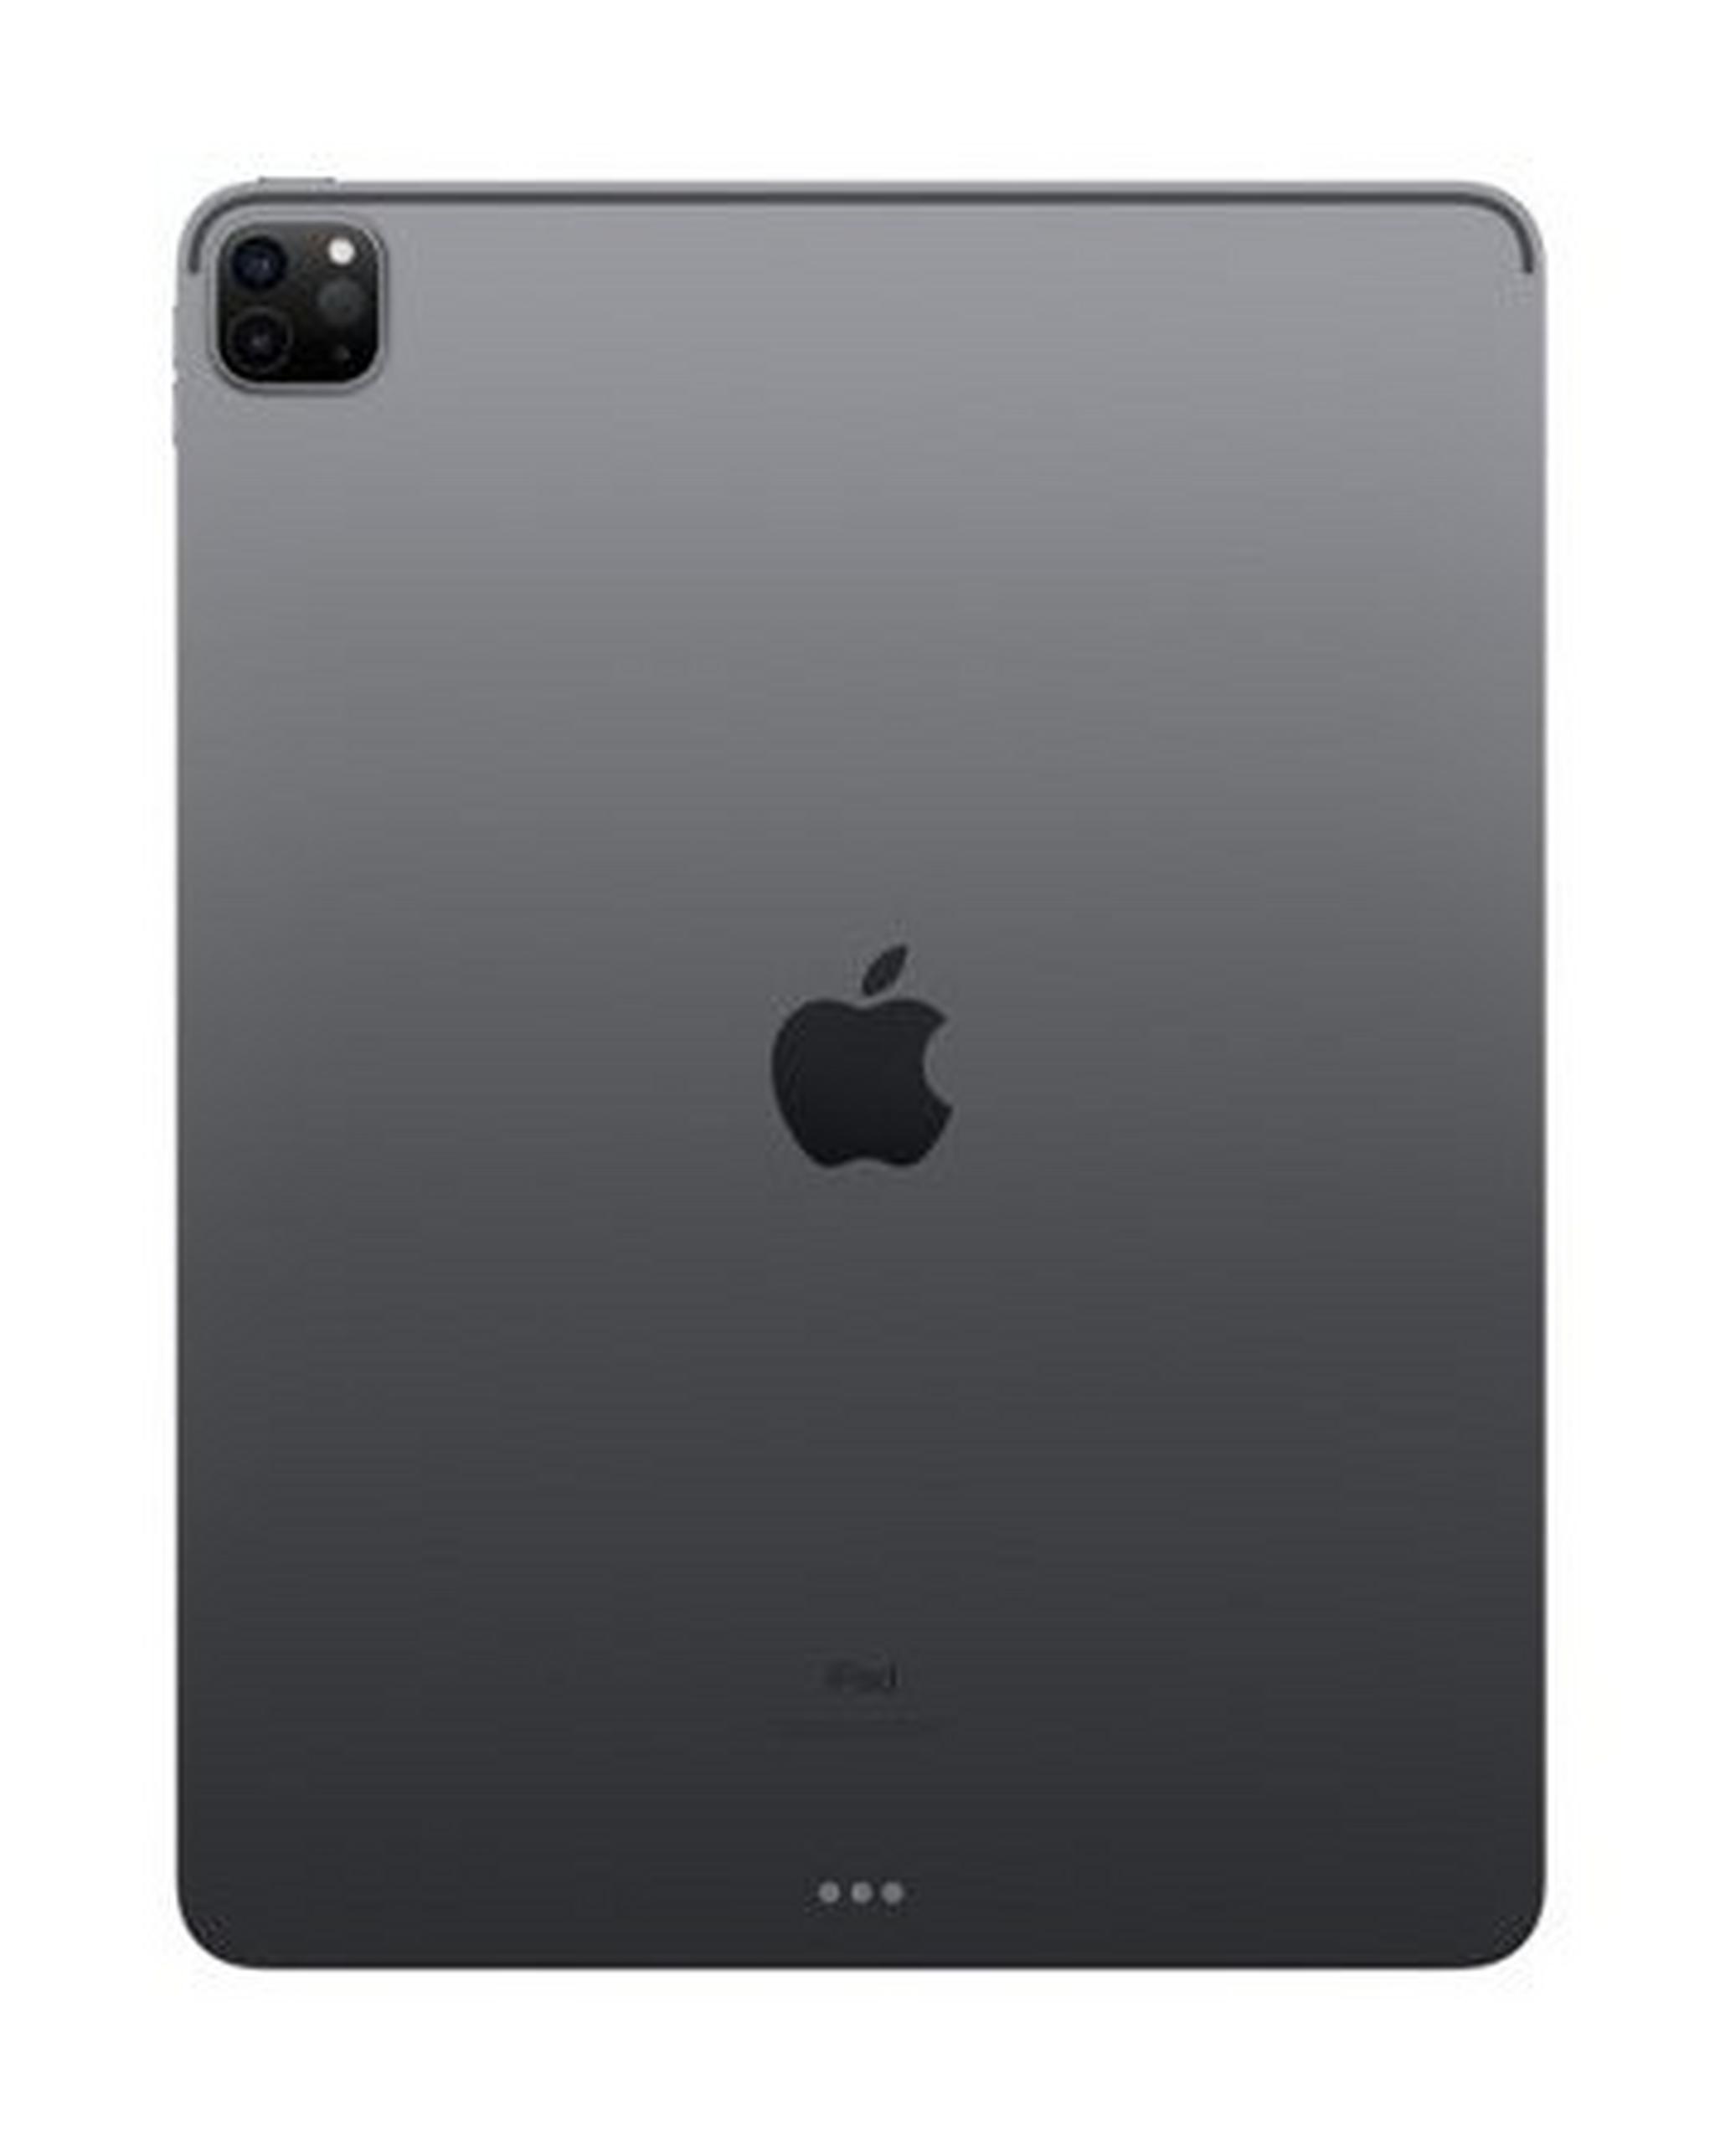 Apple IPad Pro (2020) 12.9-inch  512GB WiFi – Space Grey